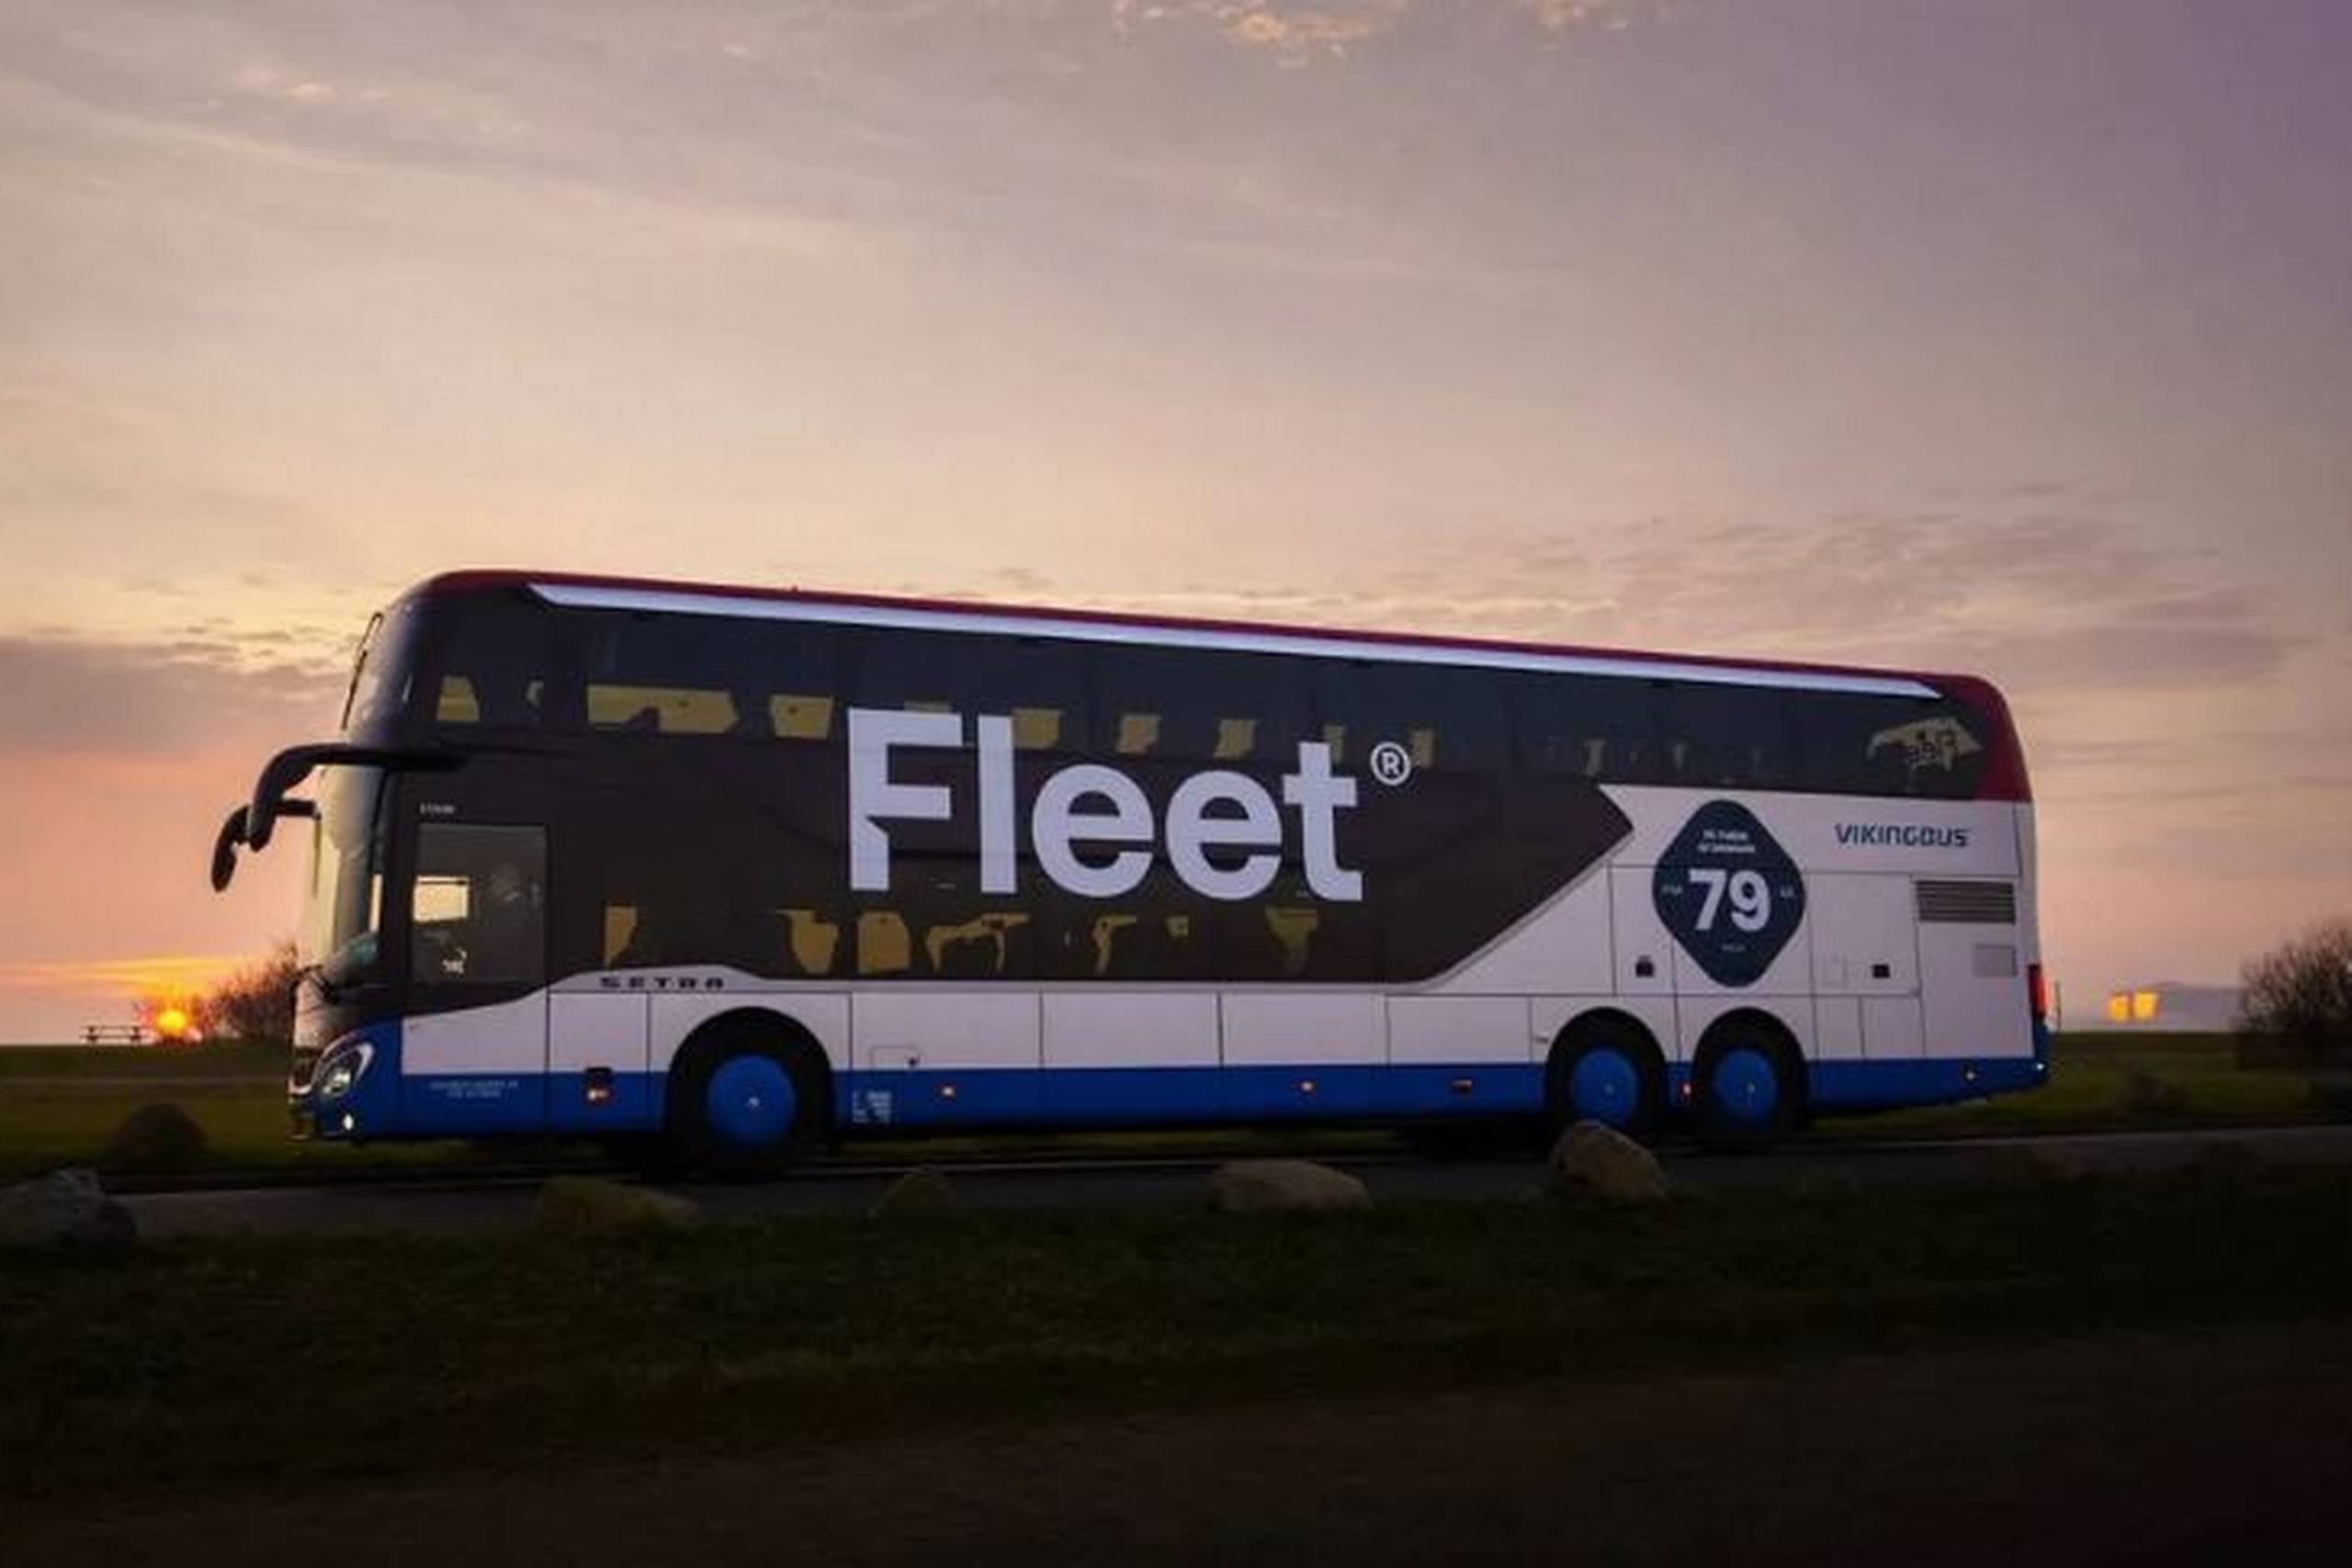 Kundepotentialet har ikke været stort nok til at holde fjernbuskonceptet Fleet i live. | Foto: Pr / Vikingbus